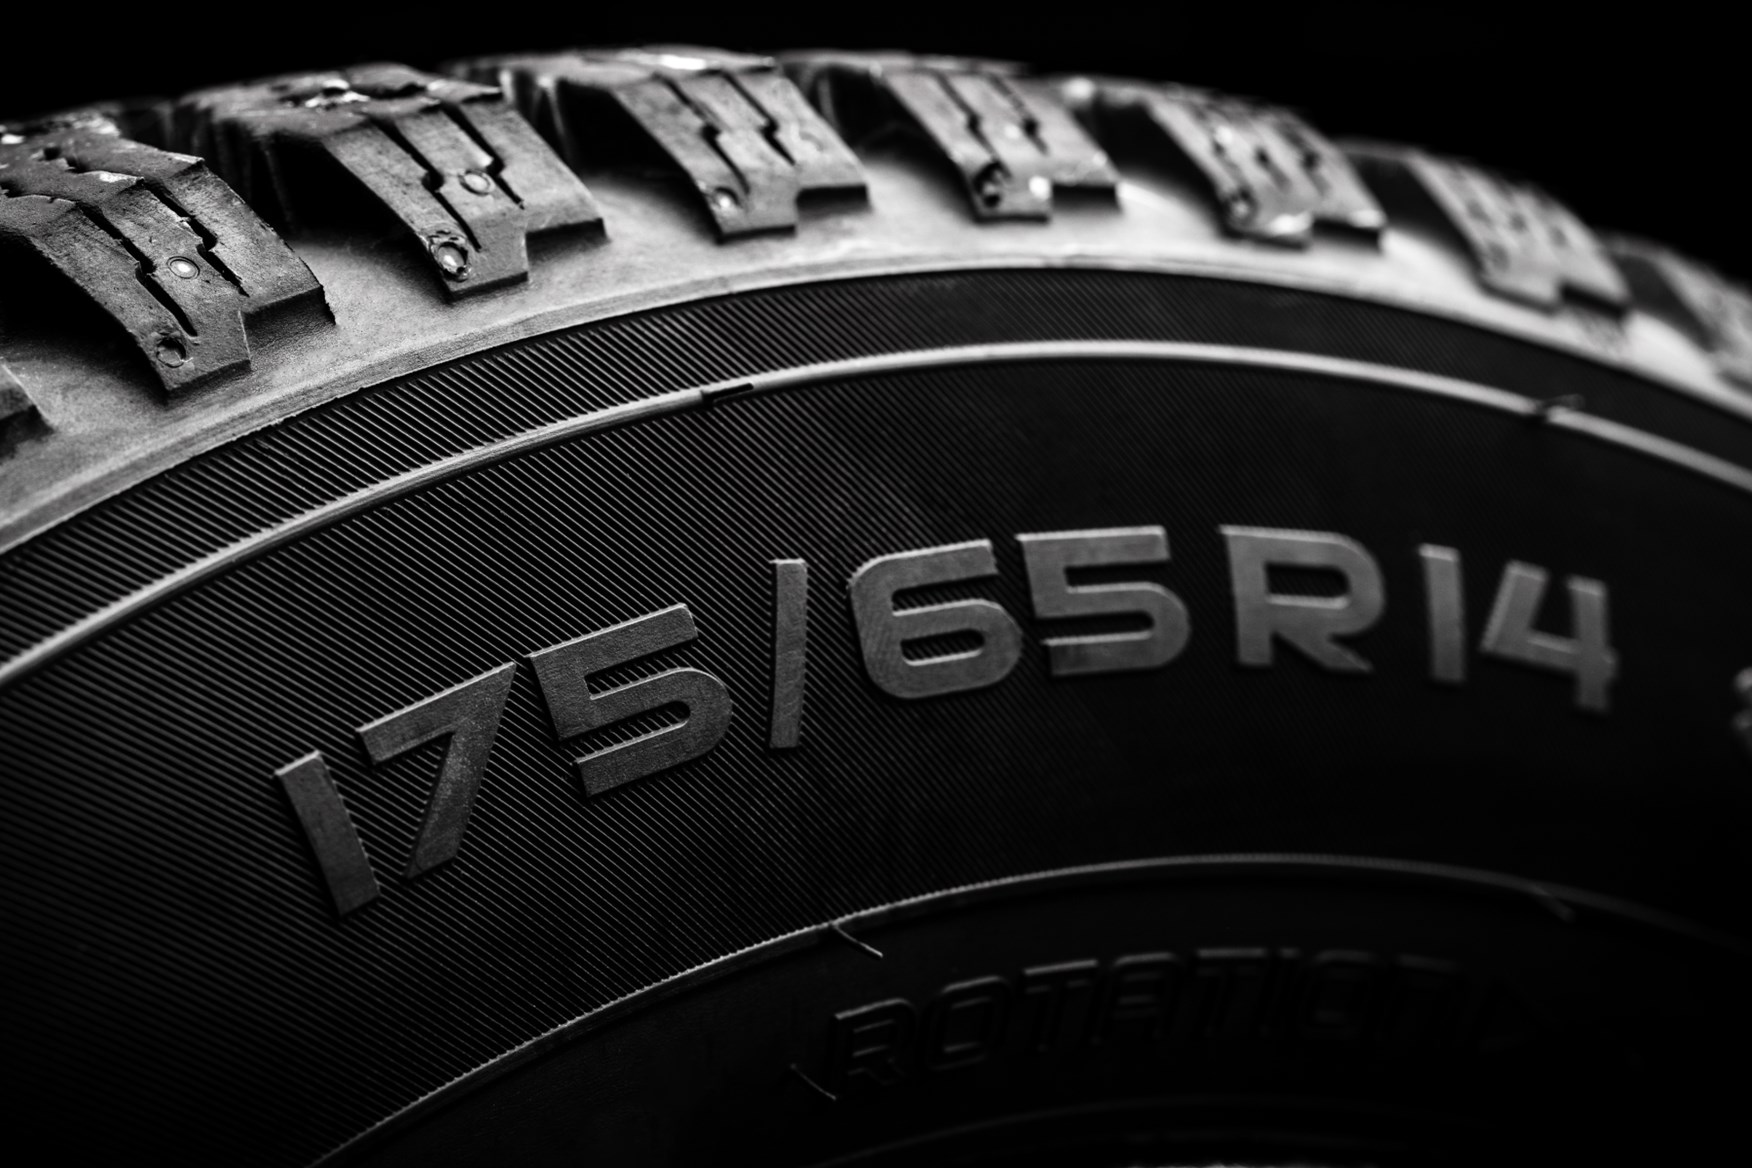 195/55-R15 vs 195/45-R15 Tire Comparison - Tire Size Calculator